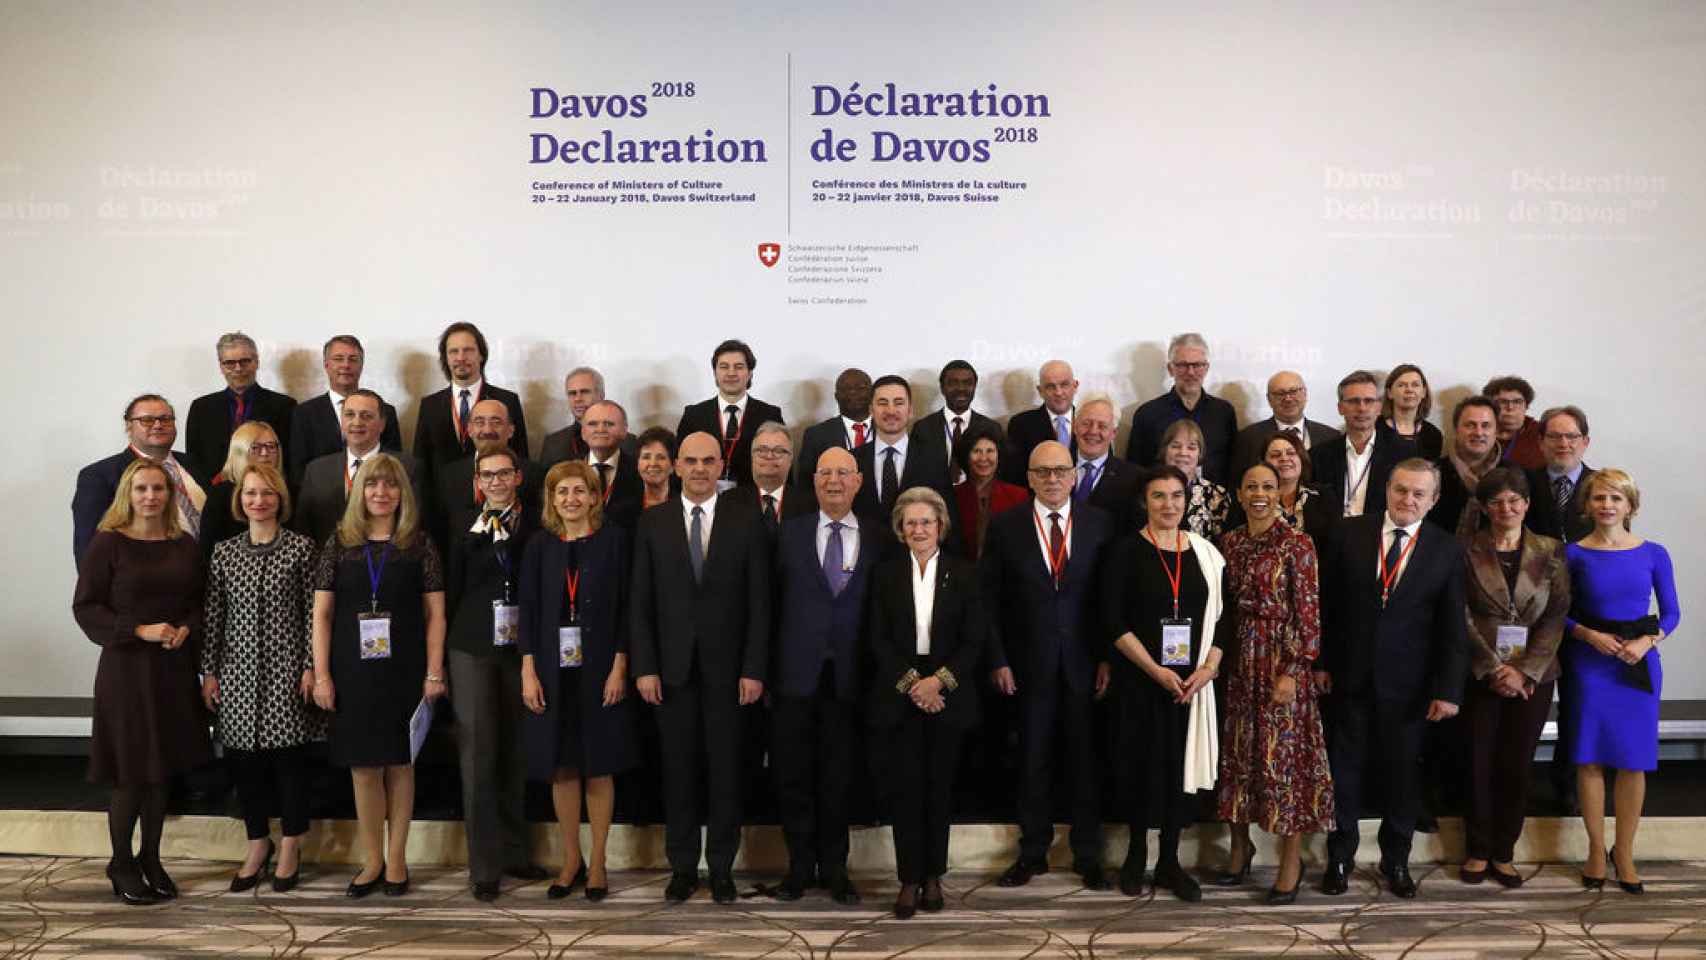 La foto de Davos, en la que figuran todos los ministros de Cultura menos Méndez de Vigo.